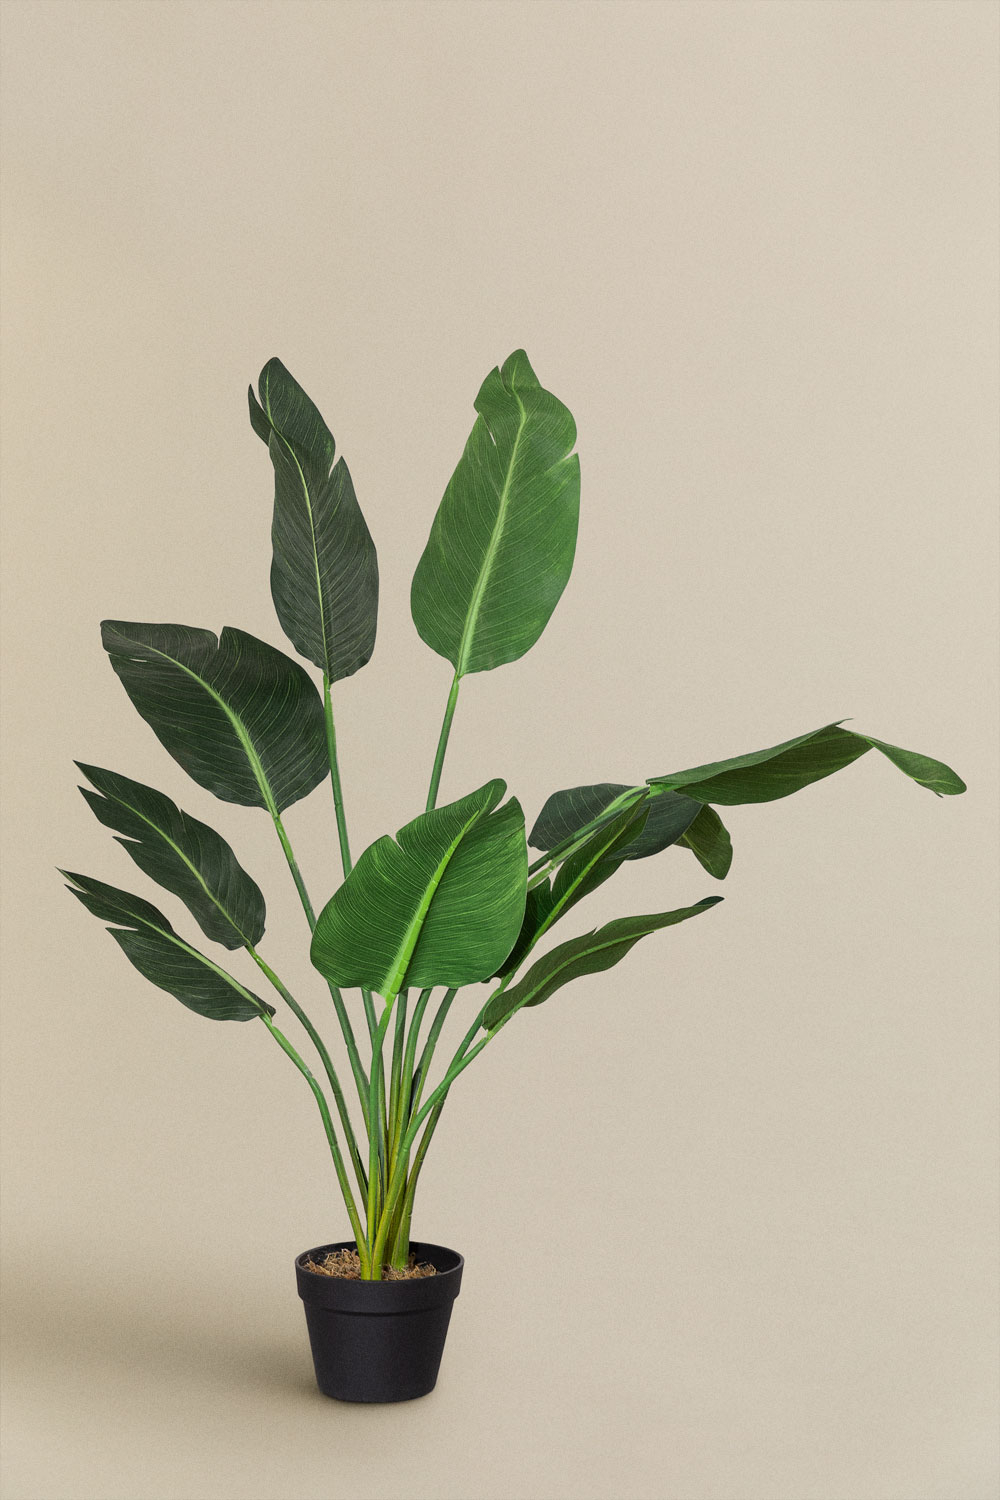 Plantas artificiales, todas las ventajas - Blog de Arte Regal